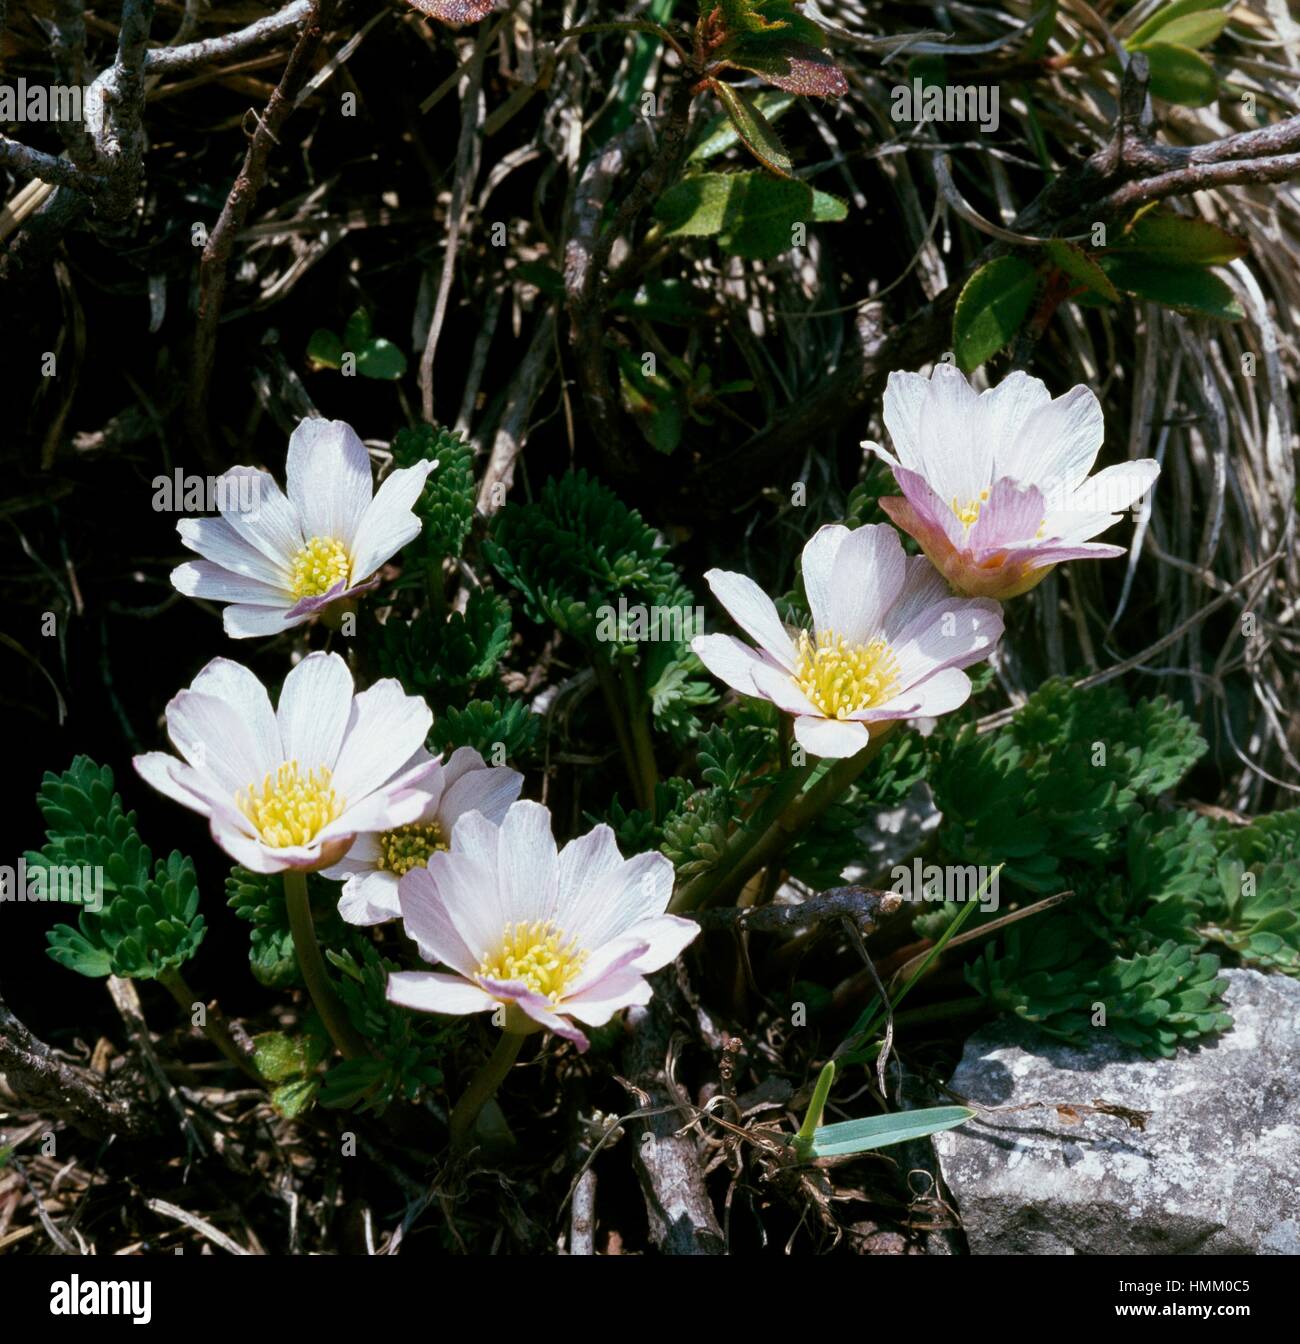 Callianthemum kernerianum, Ranunculaceae. Stock Photo